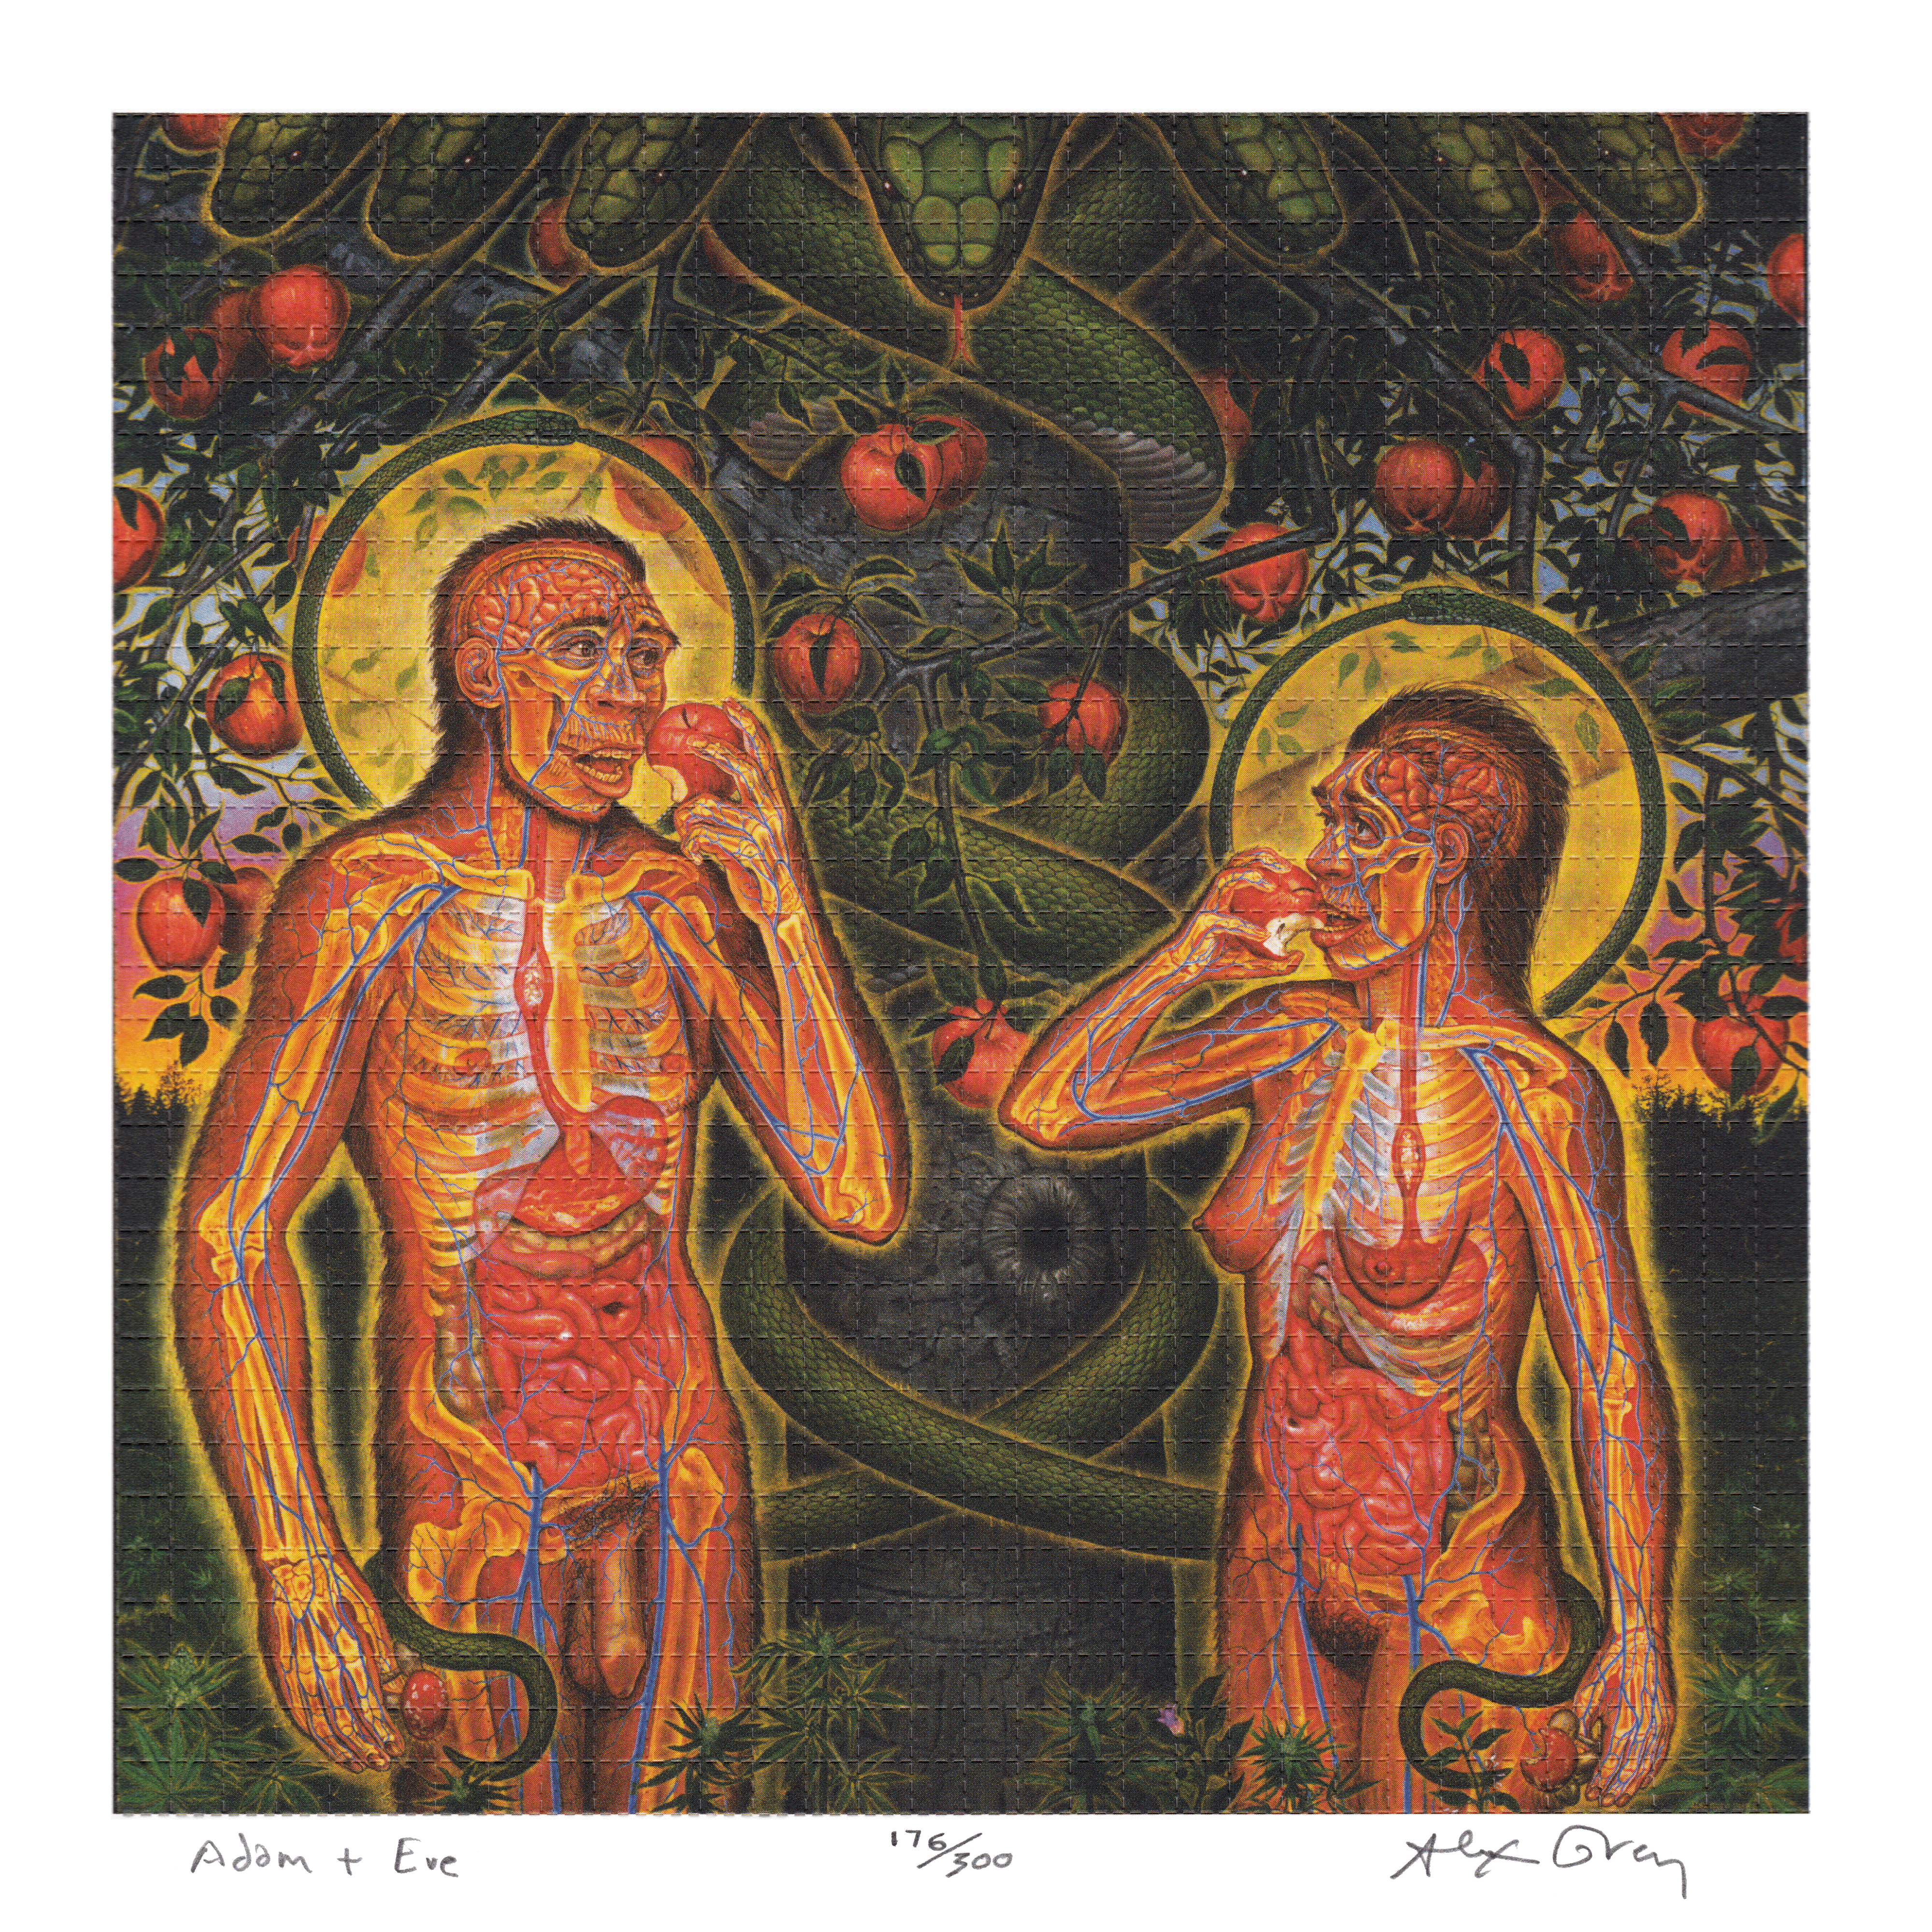 Adam & Eve by Alex Grey as LSD Blotter Art #176/300